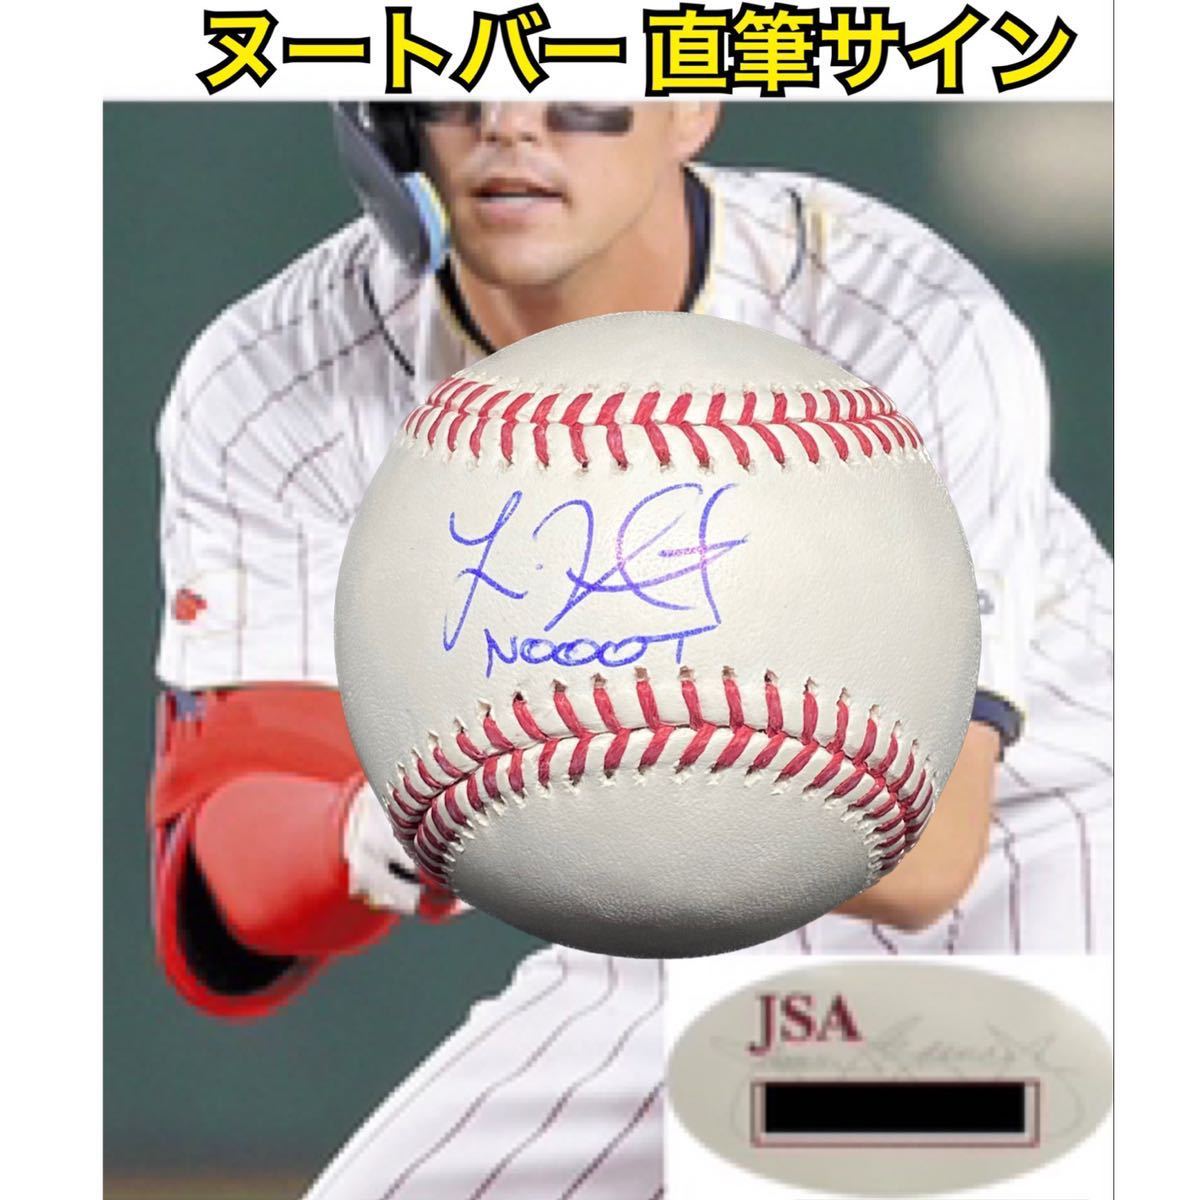 激レア カージナルス ヌートバー 直筆サイン & Nooot MLB 公式球 JSAホログラム WBC 日本代表 大谷翔平 の画像1